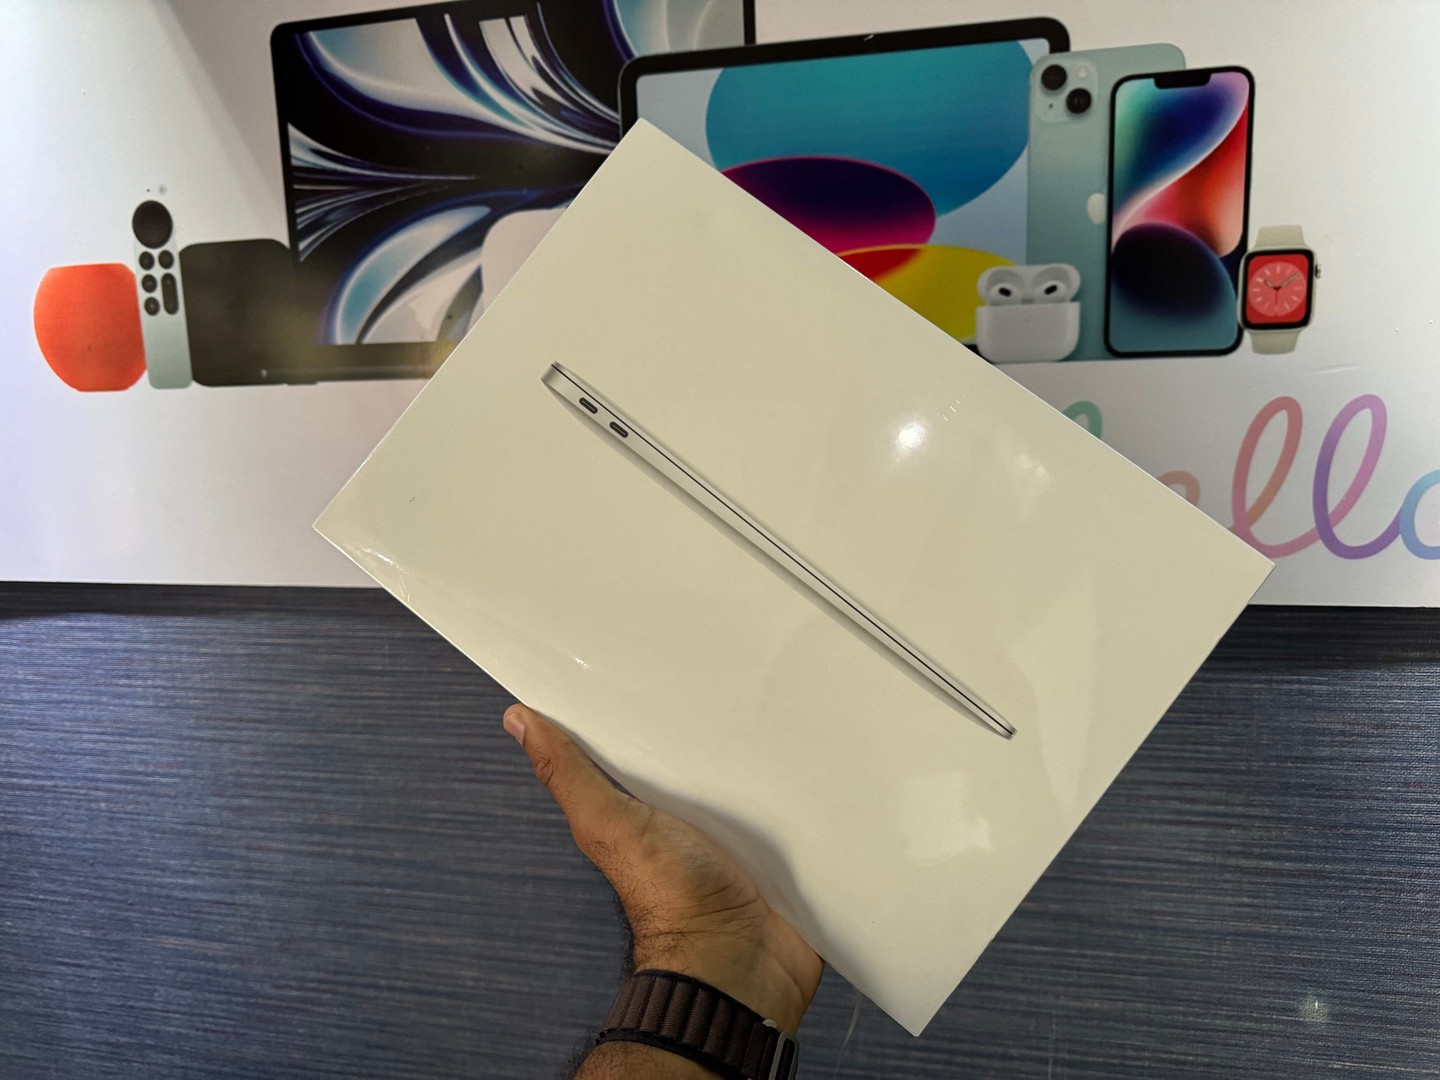 computadoras y laptops - MacBook Air 2020 13 inch/ M1 Apple Chip/ 256GB / 8GB RAM Sellada RD$ 49,500 NEG 0